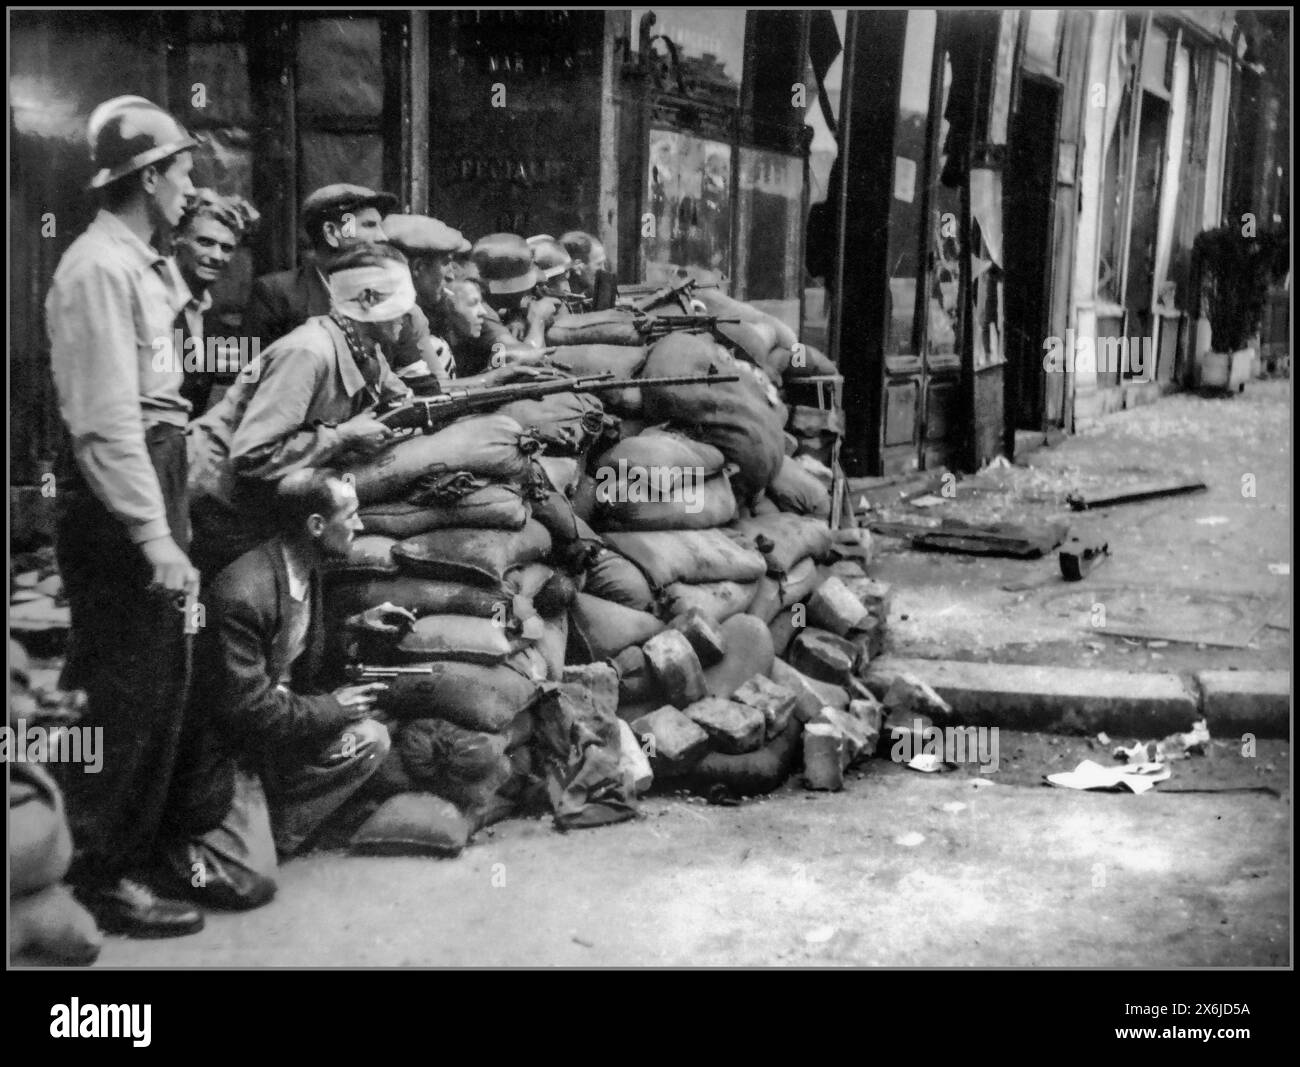 2. Weltkrieg Befreiung von Paris aus der Besatzung durch Nazi-Deutschland. Die Pariser Männer kämpfen Straße für Straße gegen die Besatzungsmacht der deutschen Nazis. Paris Frankreich im August 1944 20.000 kapitulierten Truppen oder flohen, und die kämpfenden wurden schnell überwunden. Am Morgen des 25. August fegte die 2. Panzerdivision die westliche Hälfte von Paris, während die 4. Infanteriedivision den östlichen Teil räumte. Paris wurde befreit. Stockfoto